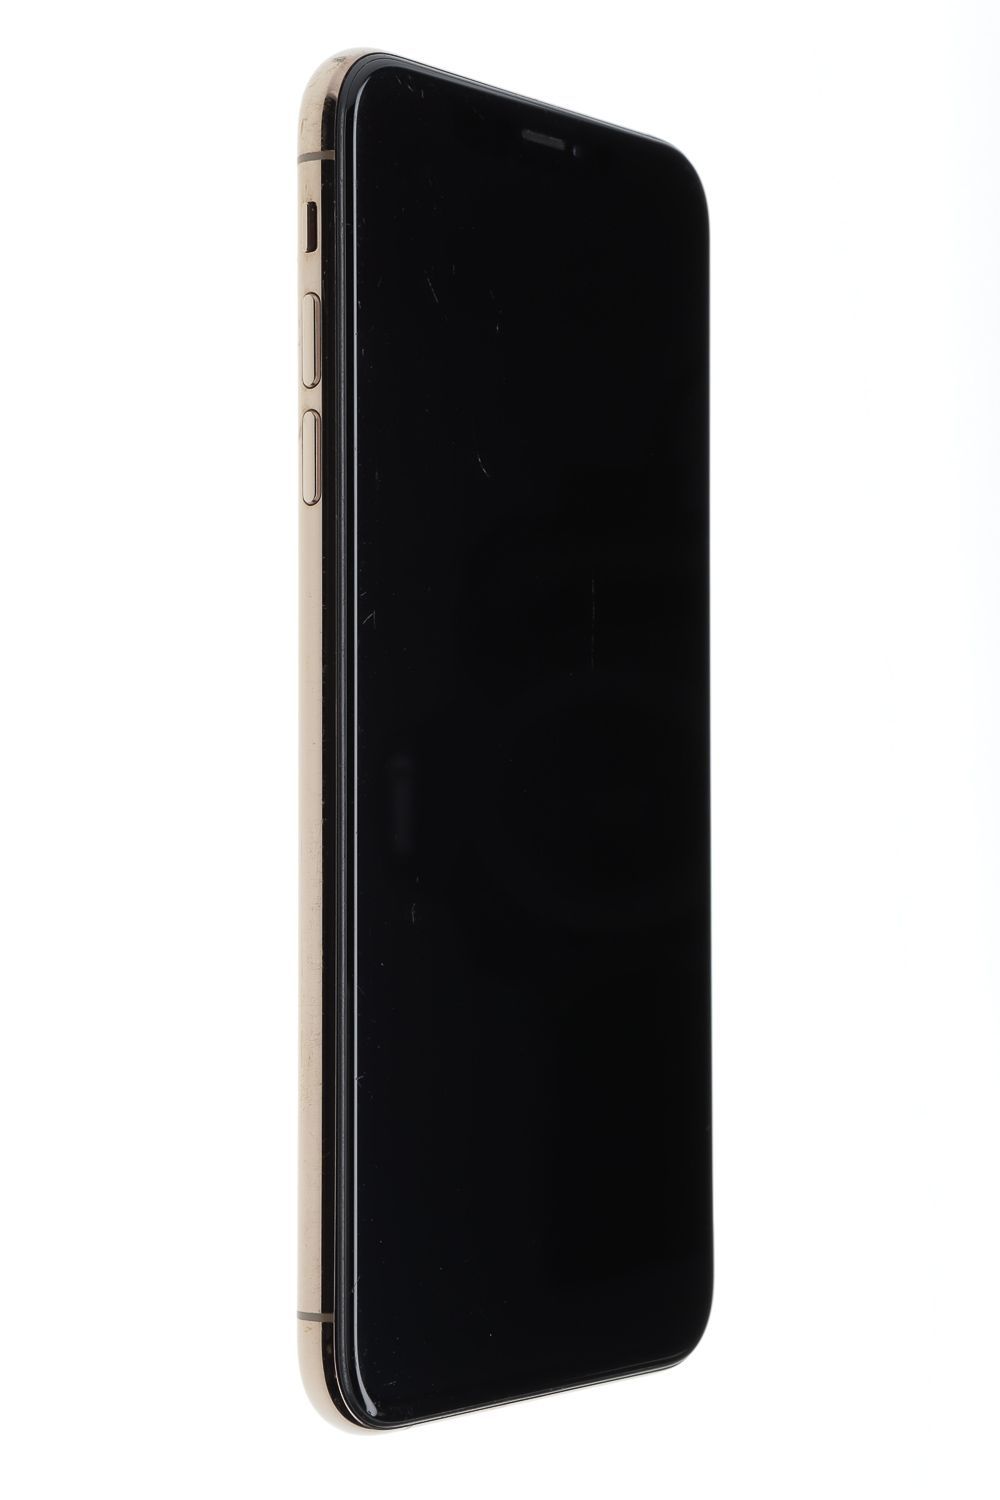 Мобилен телефон Apple iPhone XS Max, Gold, 256 GB, Foarte Bun